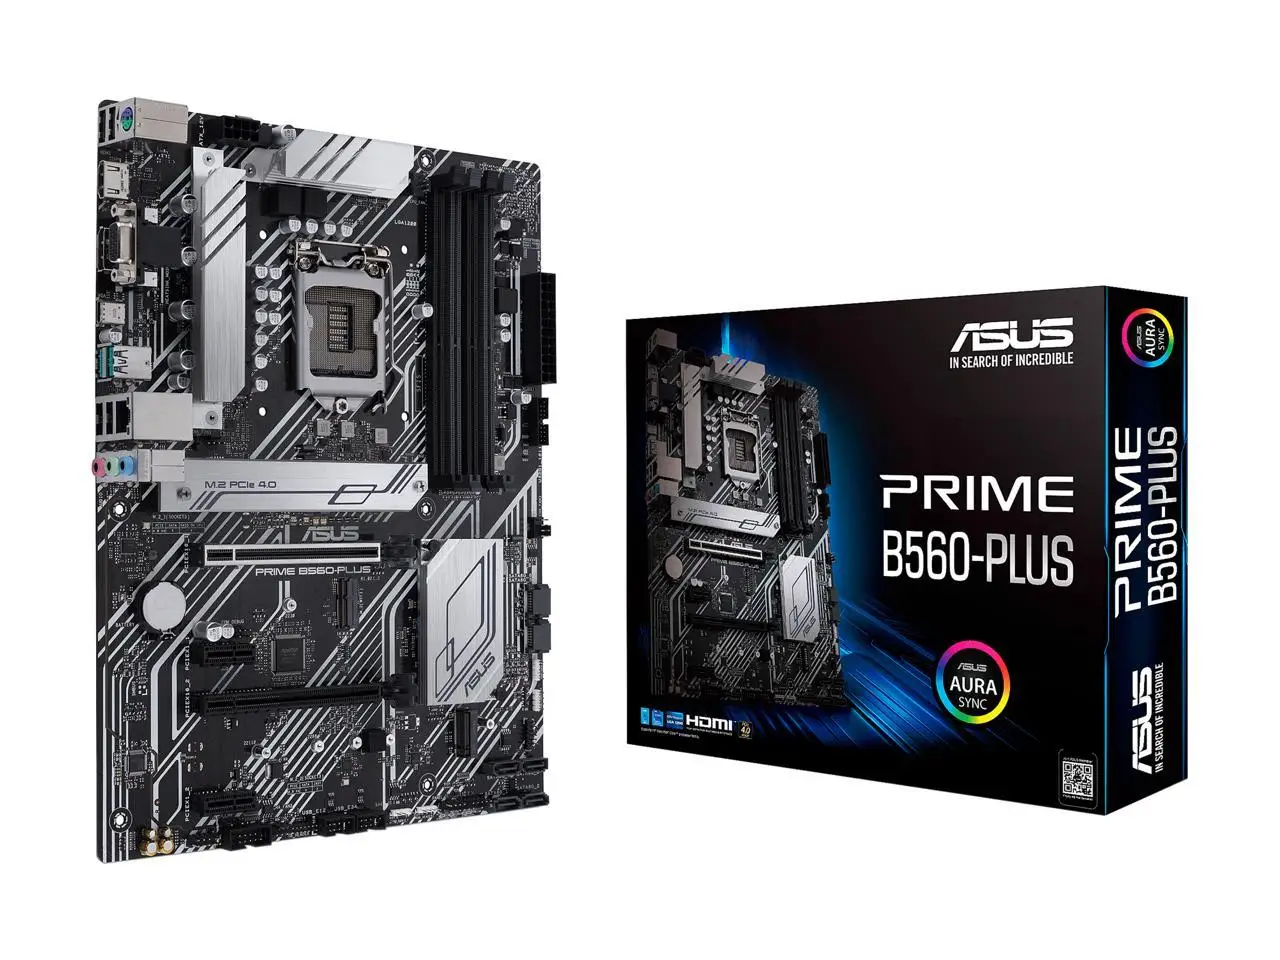 

Motherboard ASUS PRIME B560-PLUS LGA 1200 Intel B560 SATA 6Gb/s ATX Intel